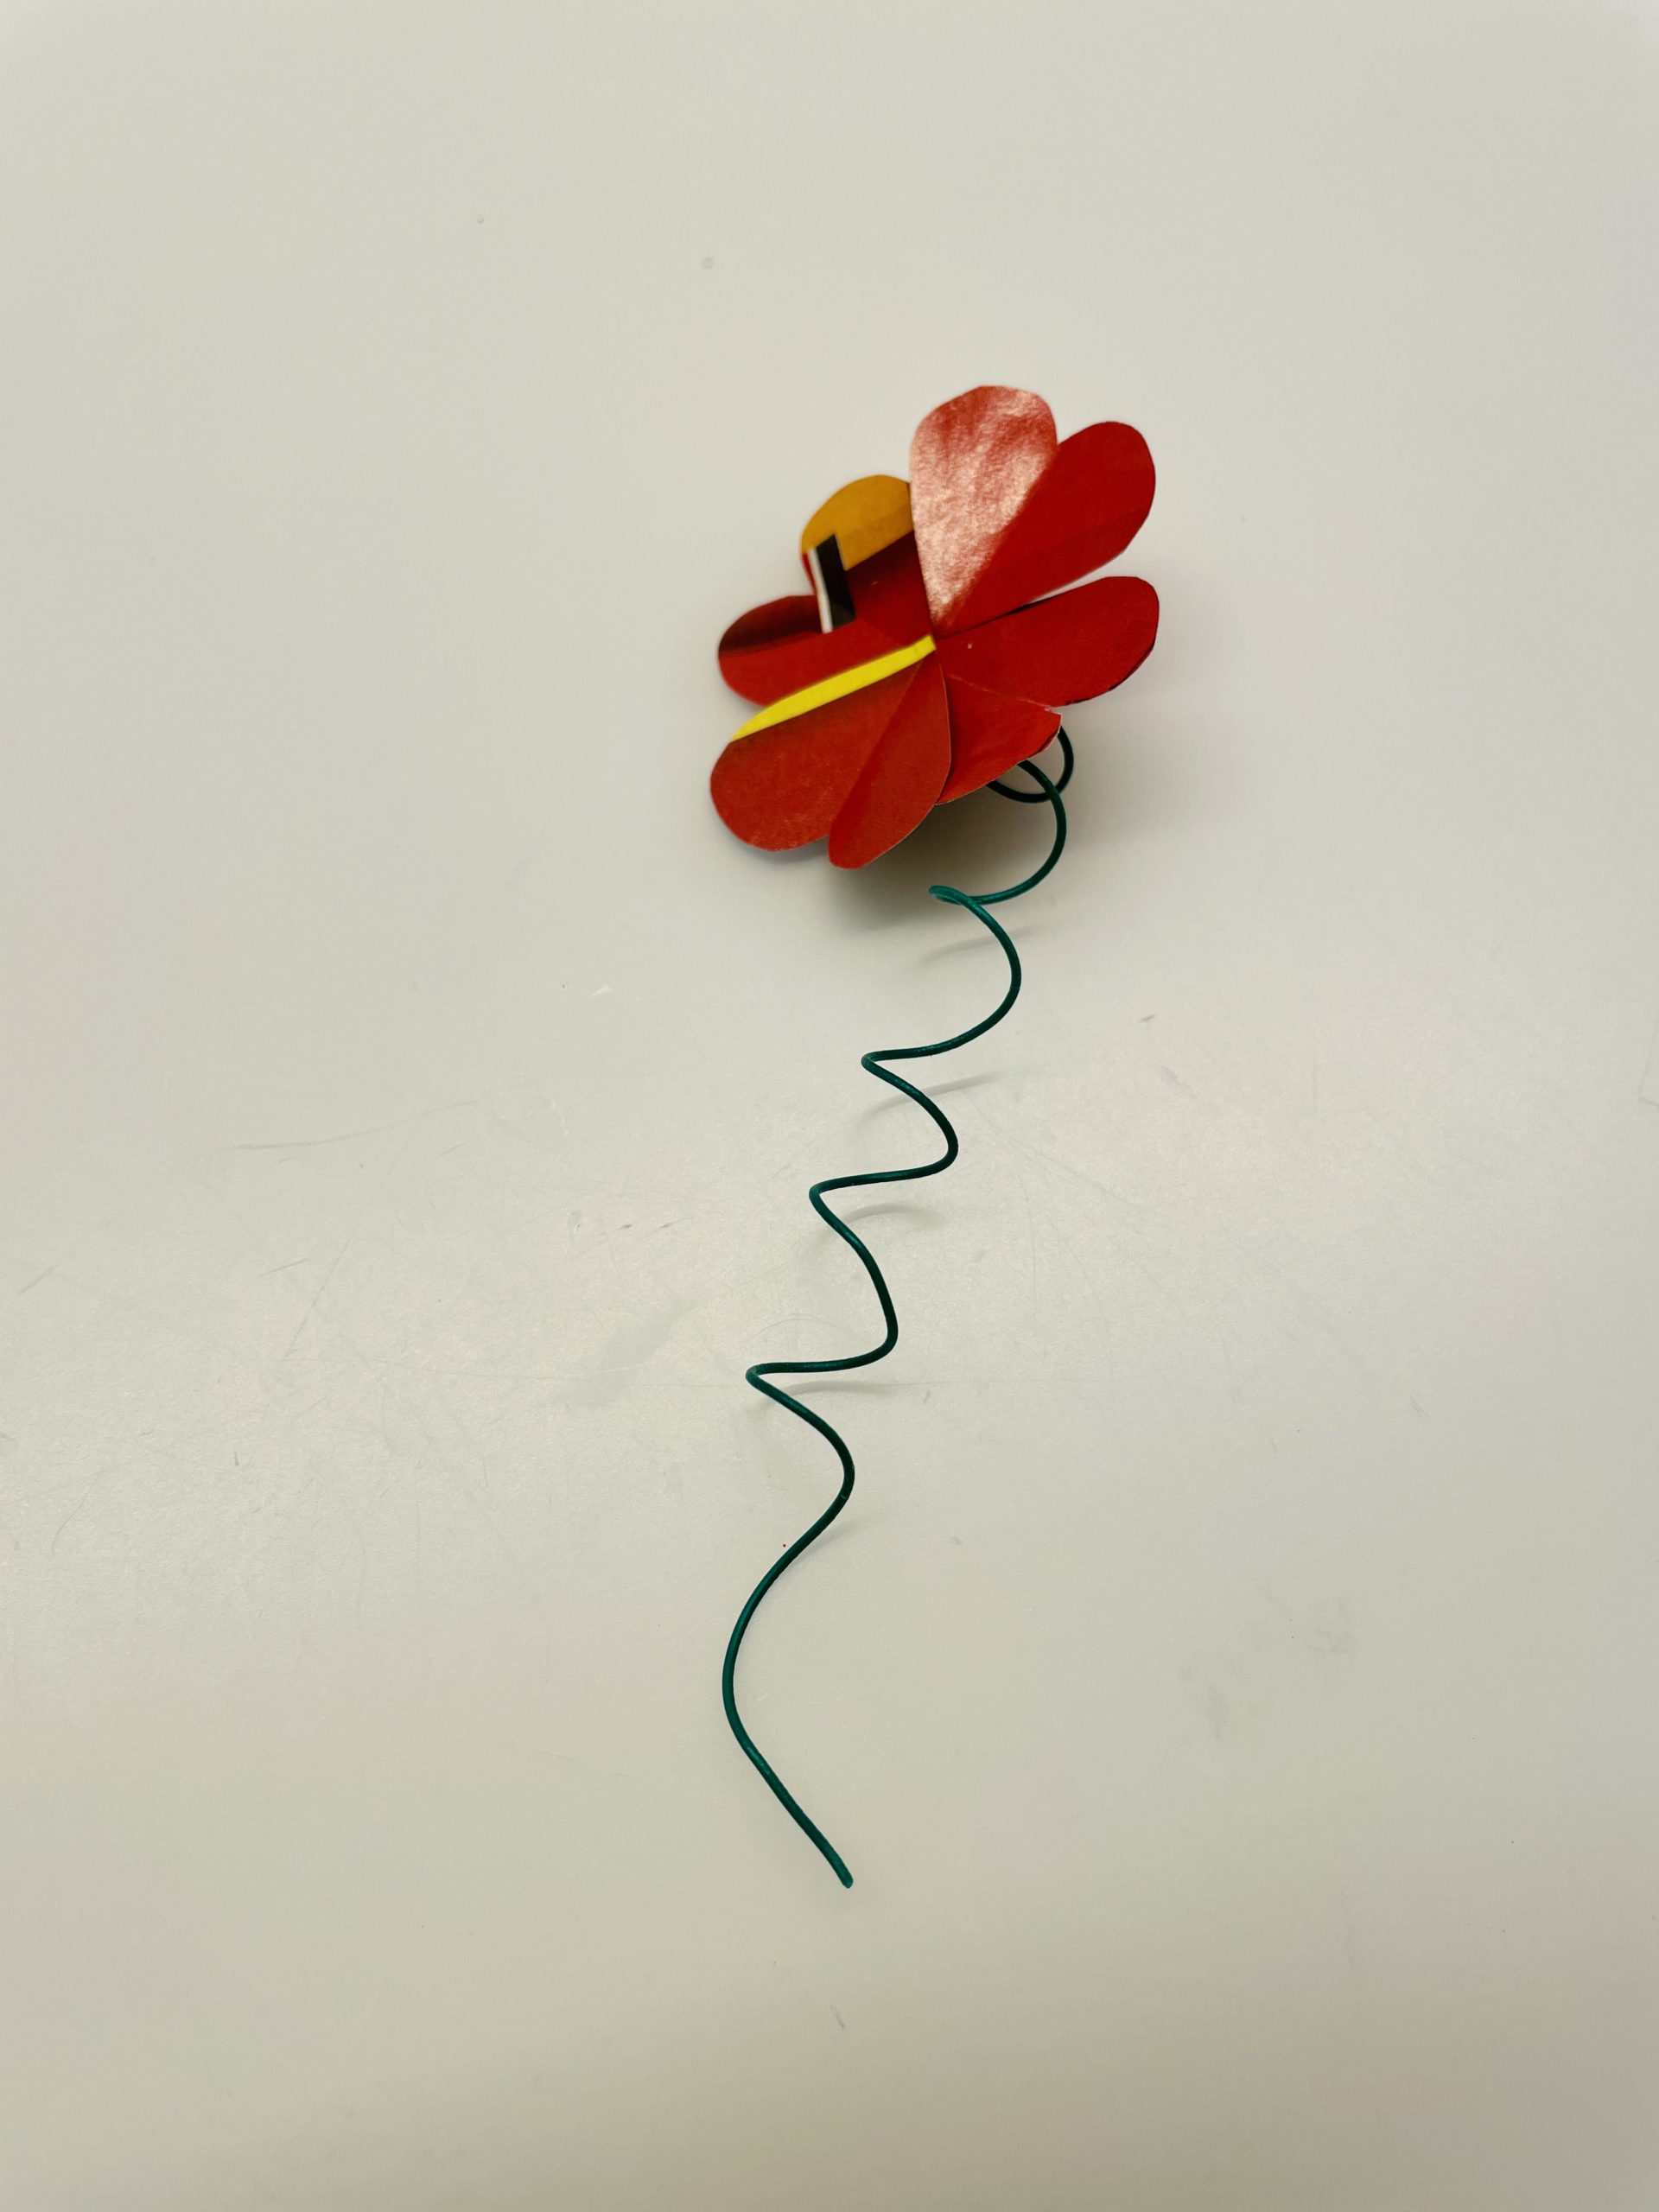 Bild zum Schritt 14 für das Bastel- und DIY-Abenteuer für Kinder: 'So könnte eure Blume jetzt ausschauen.'